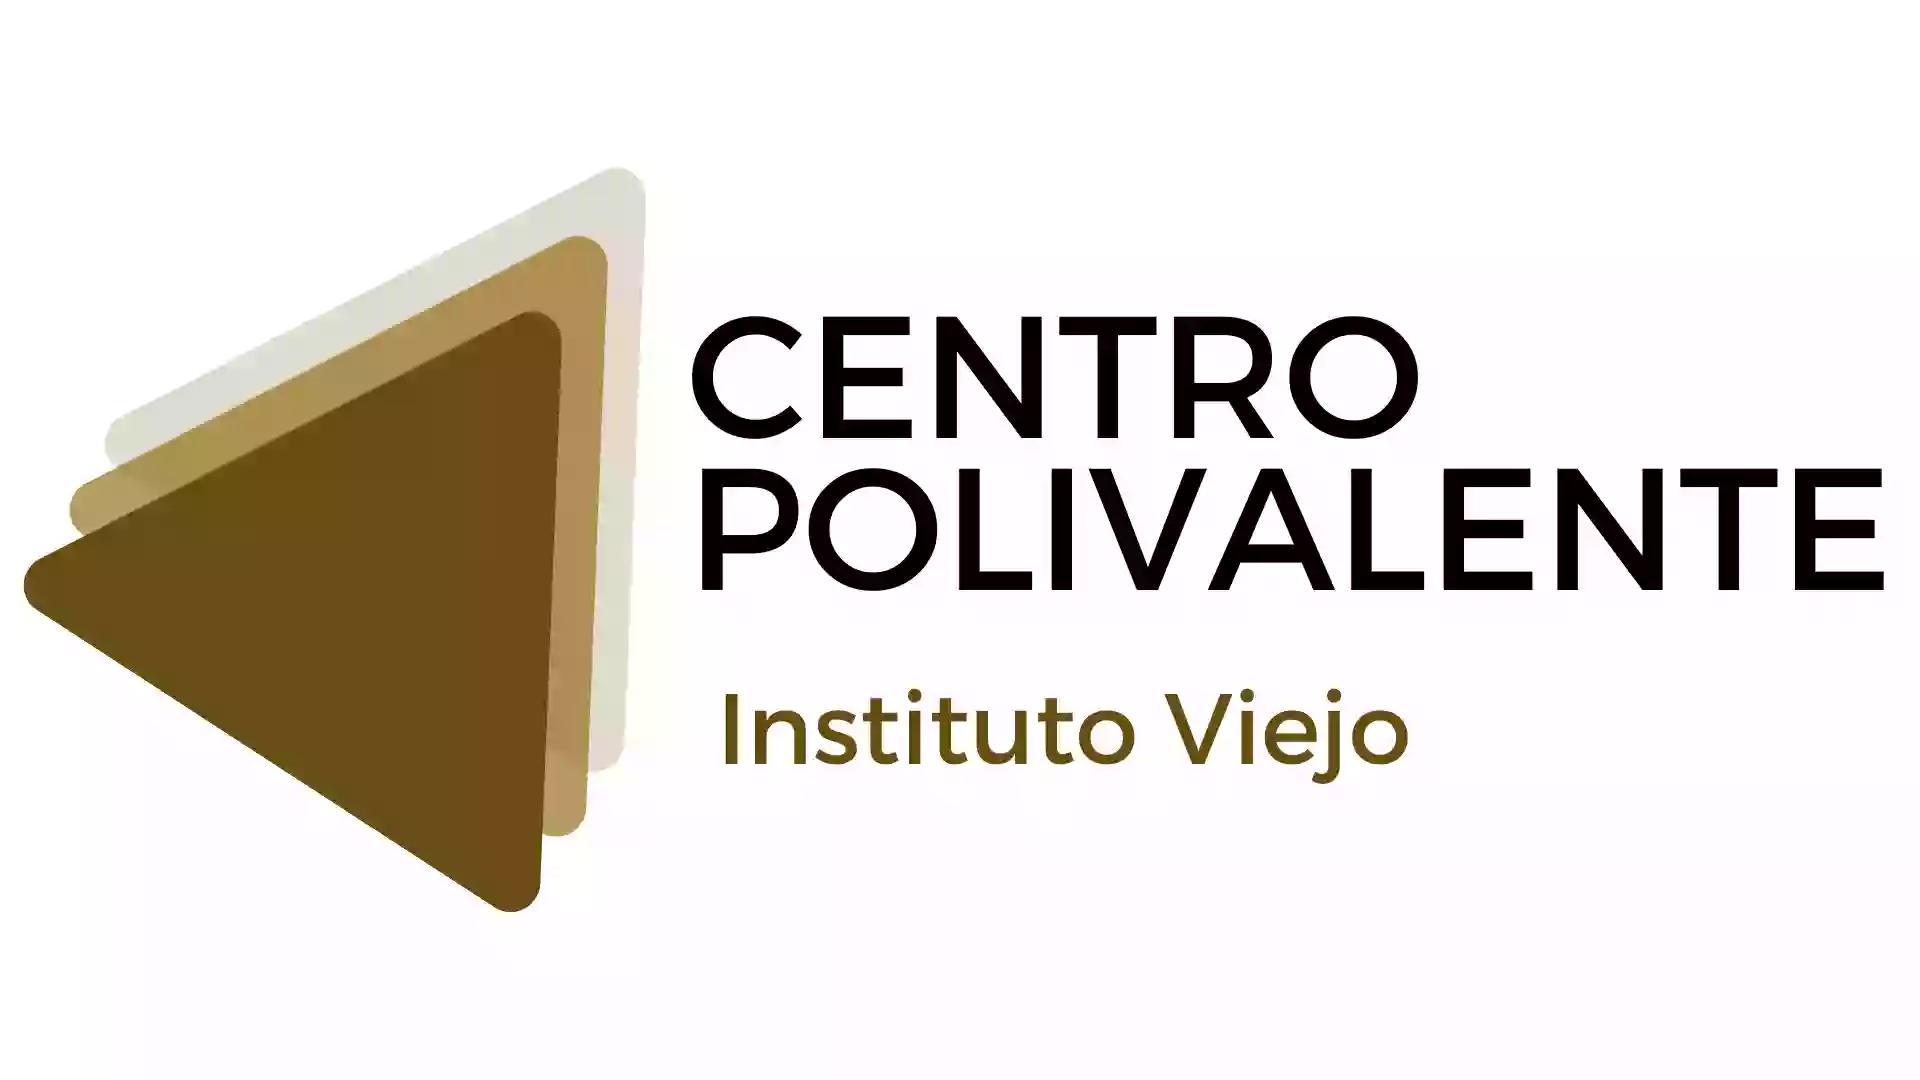 Centre Polivalent Instituto Viejo